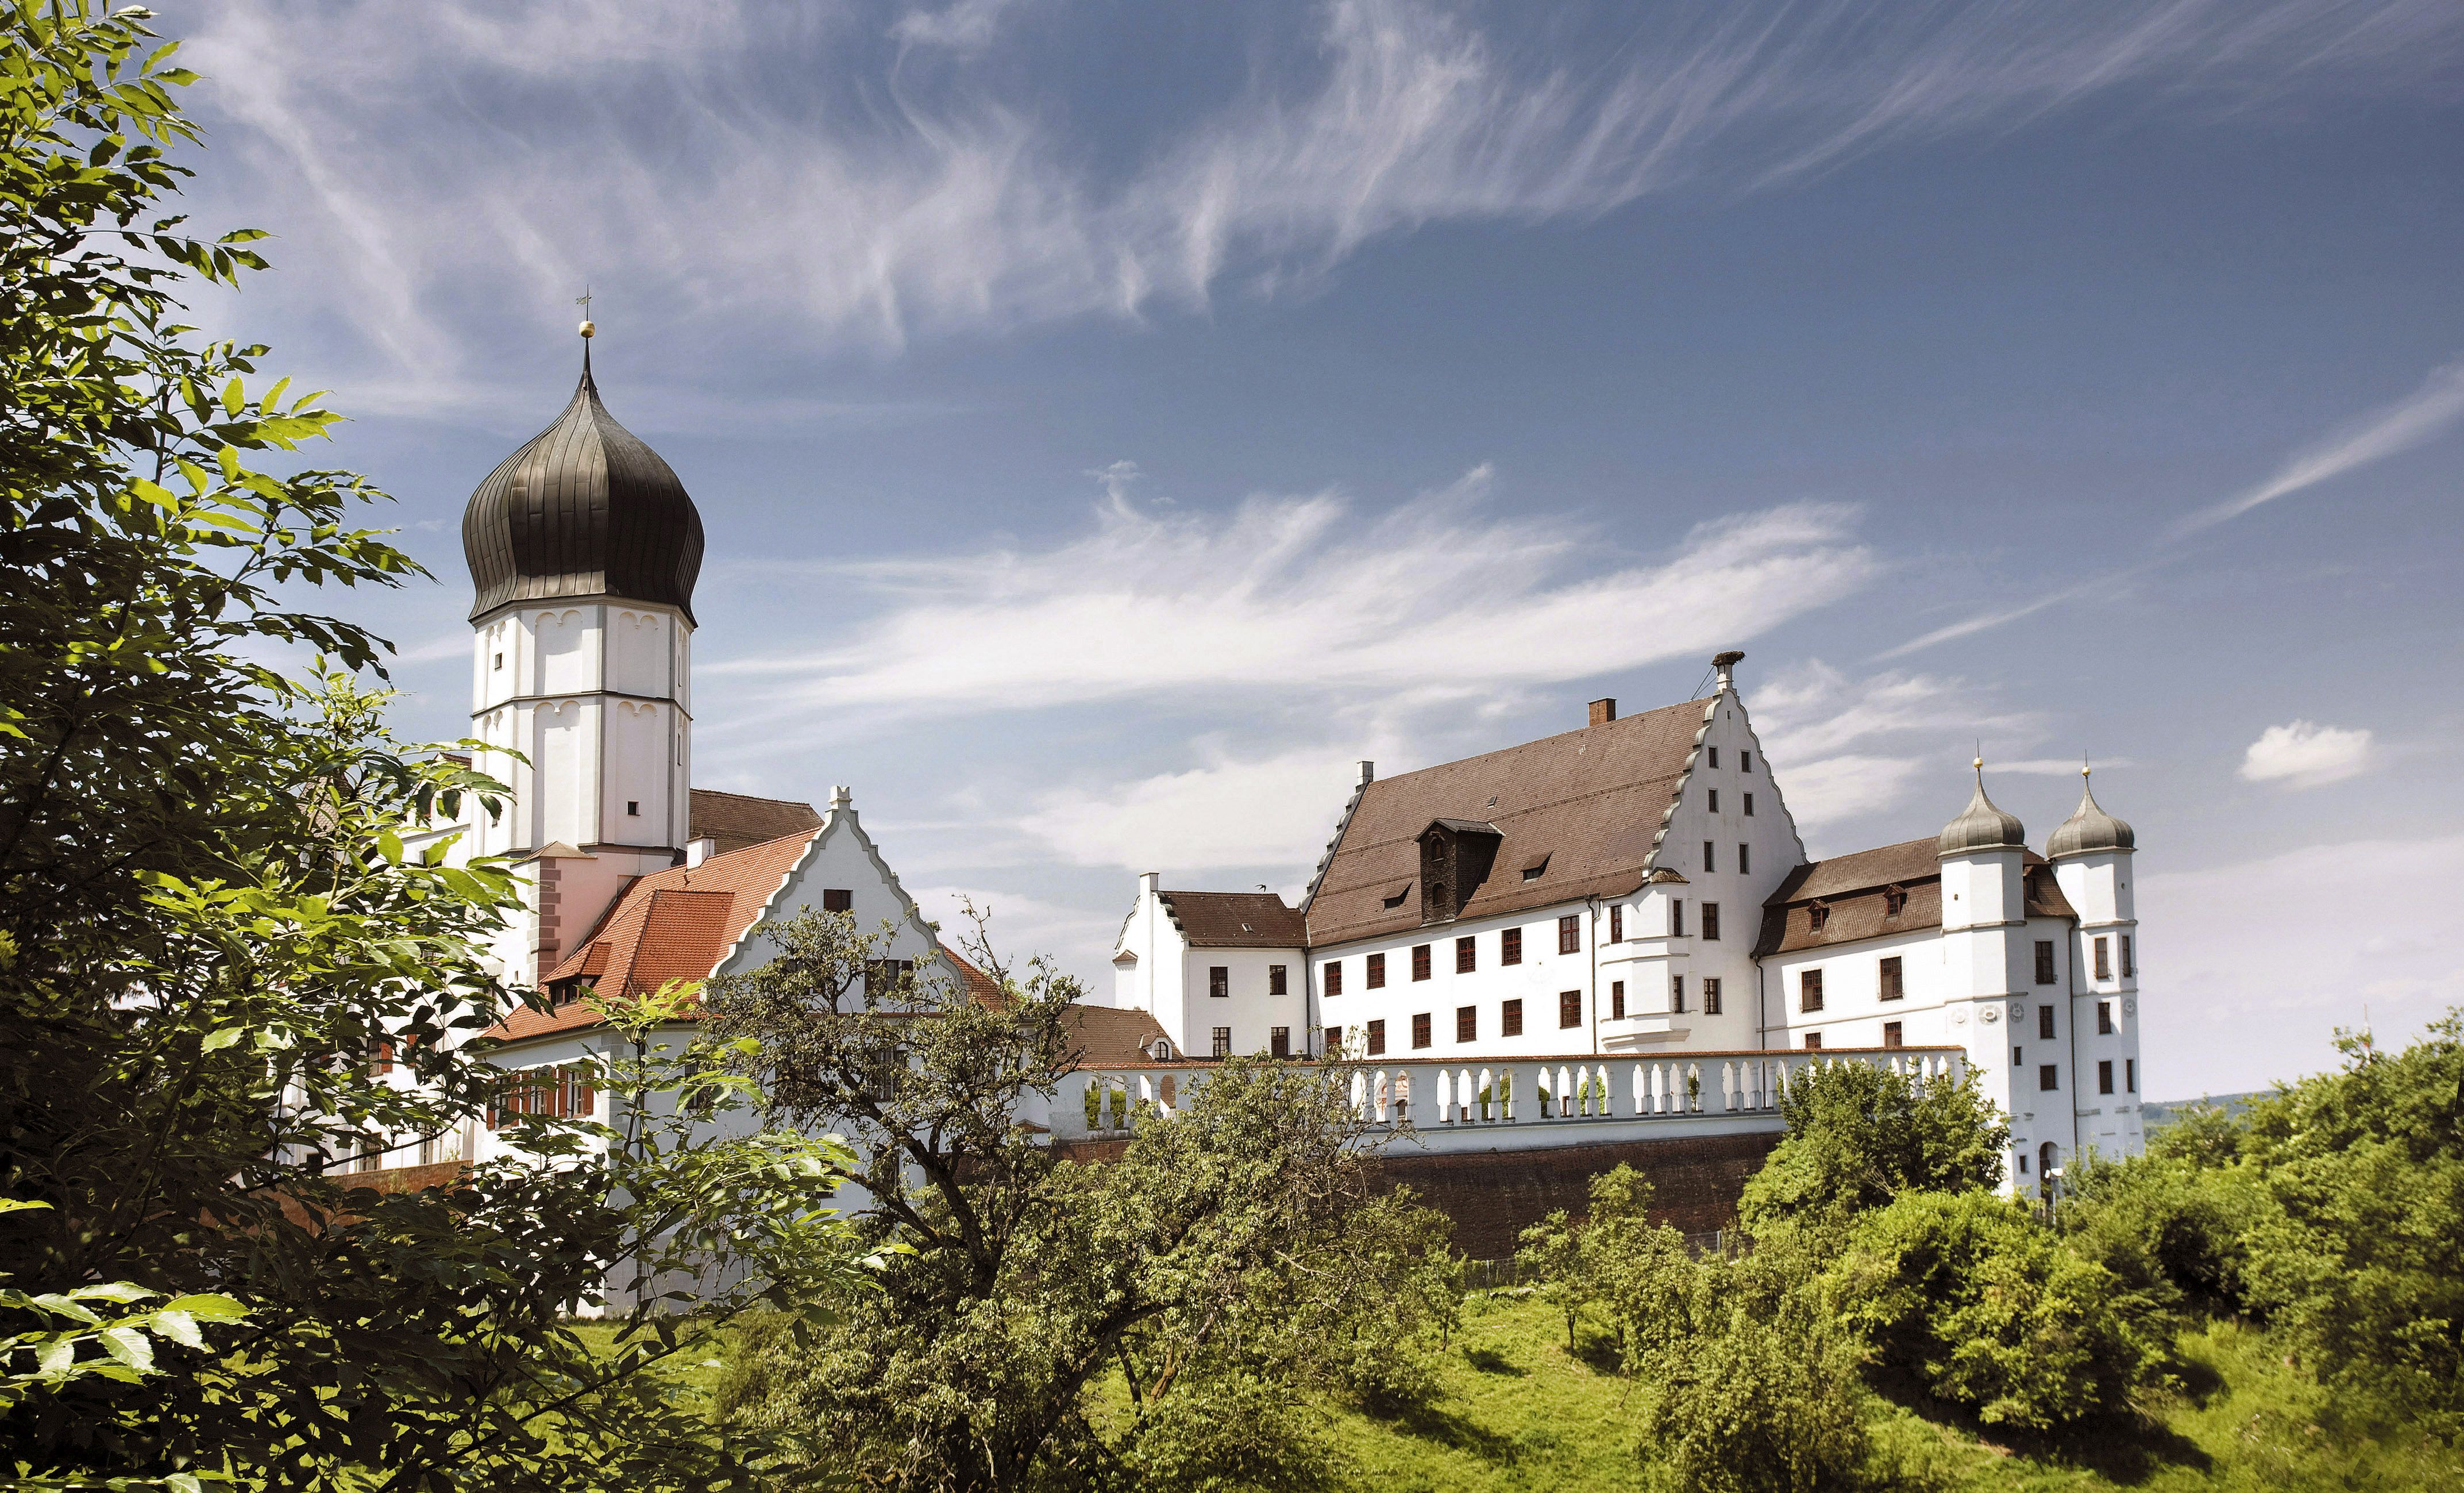 Vöhlinschloss in Illertissen mit Schlosskapelle